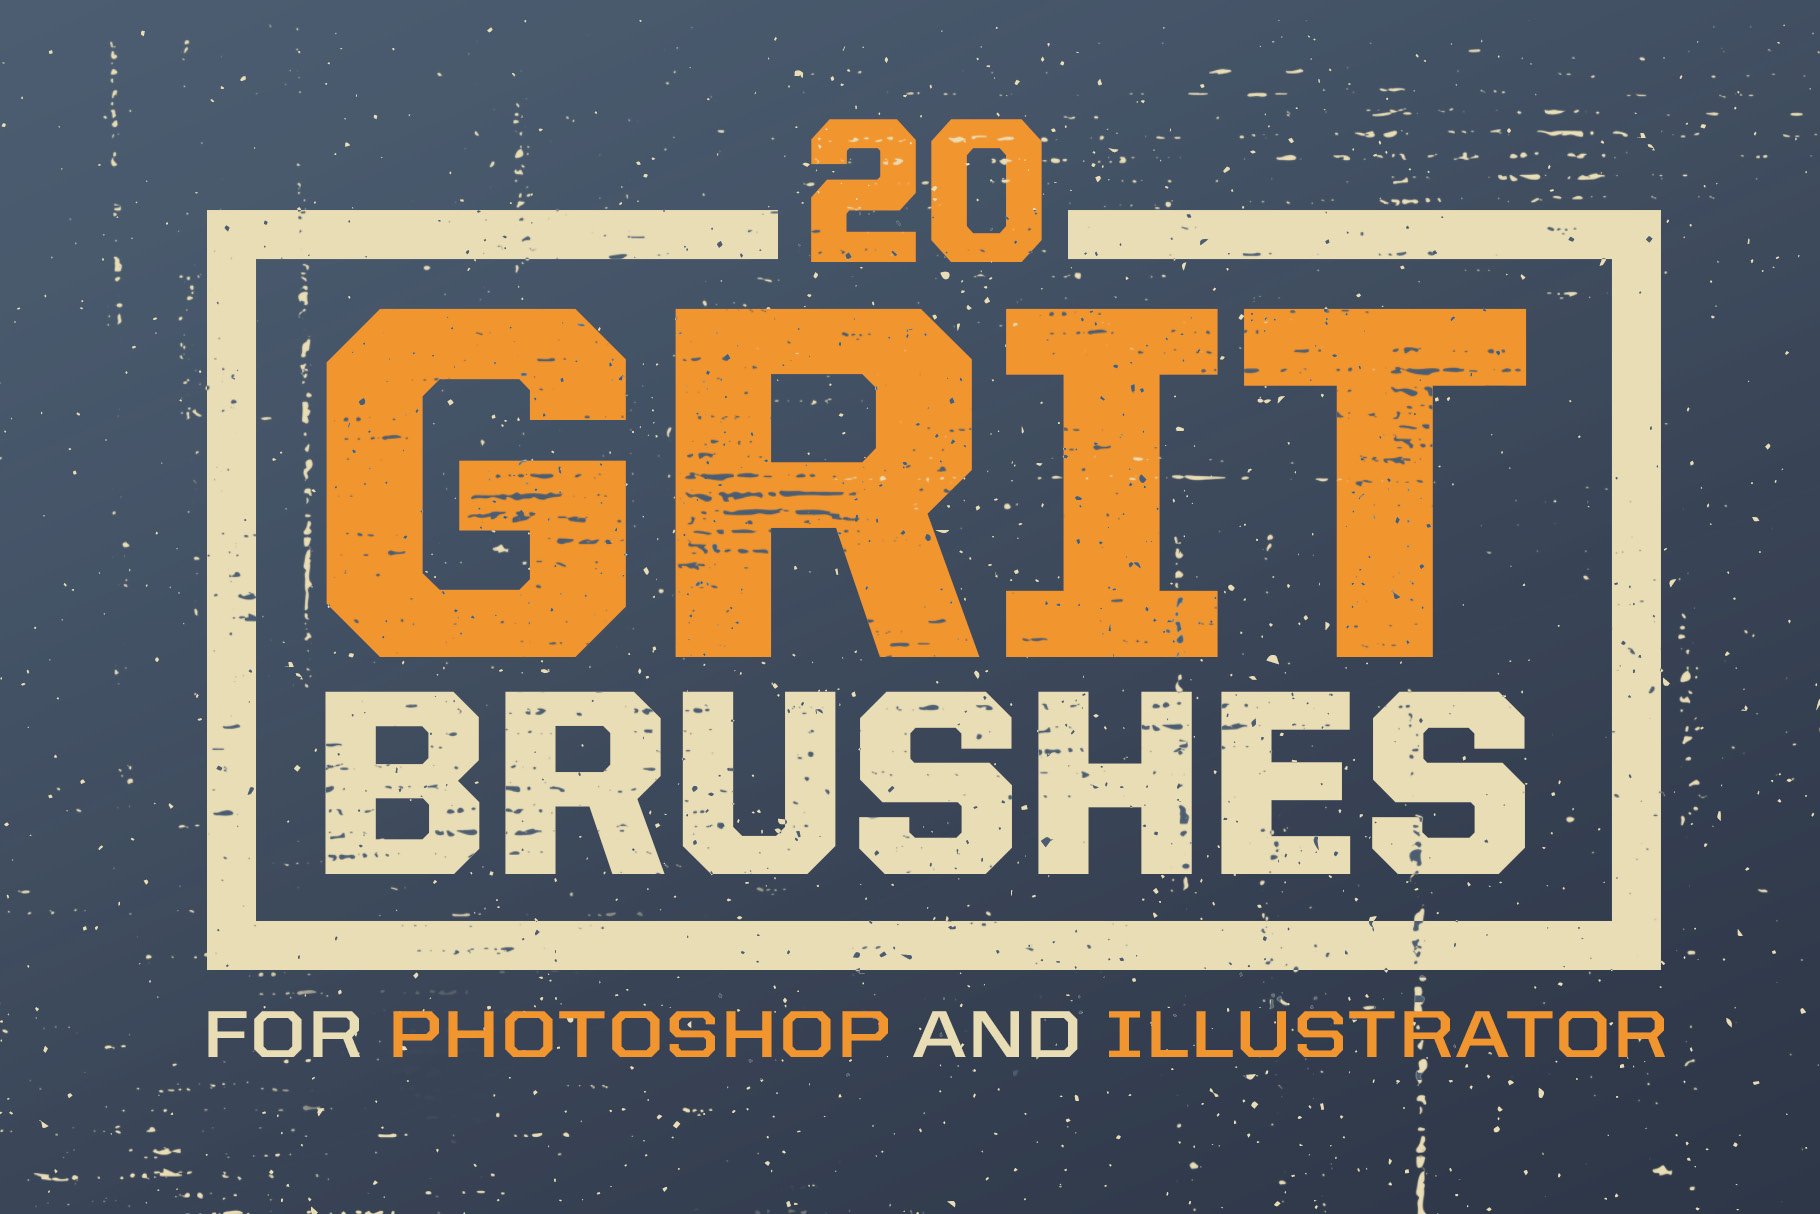 Grit Photoshop & Illustrator Brushescover image.